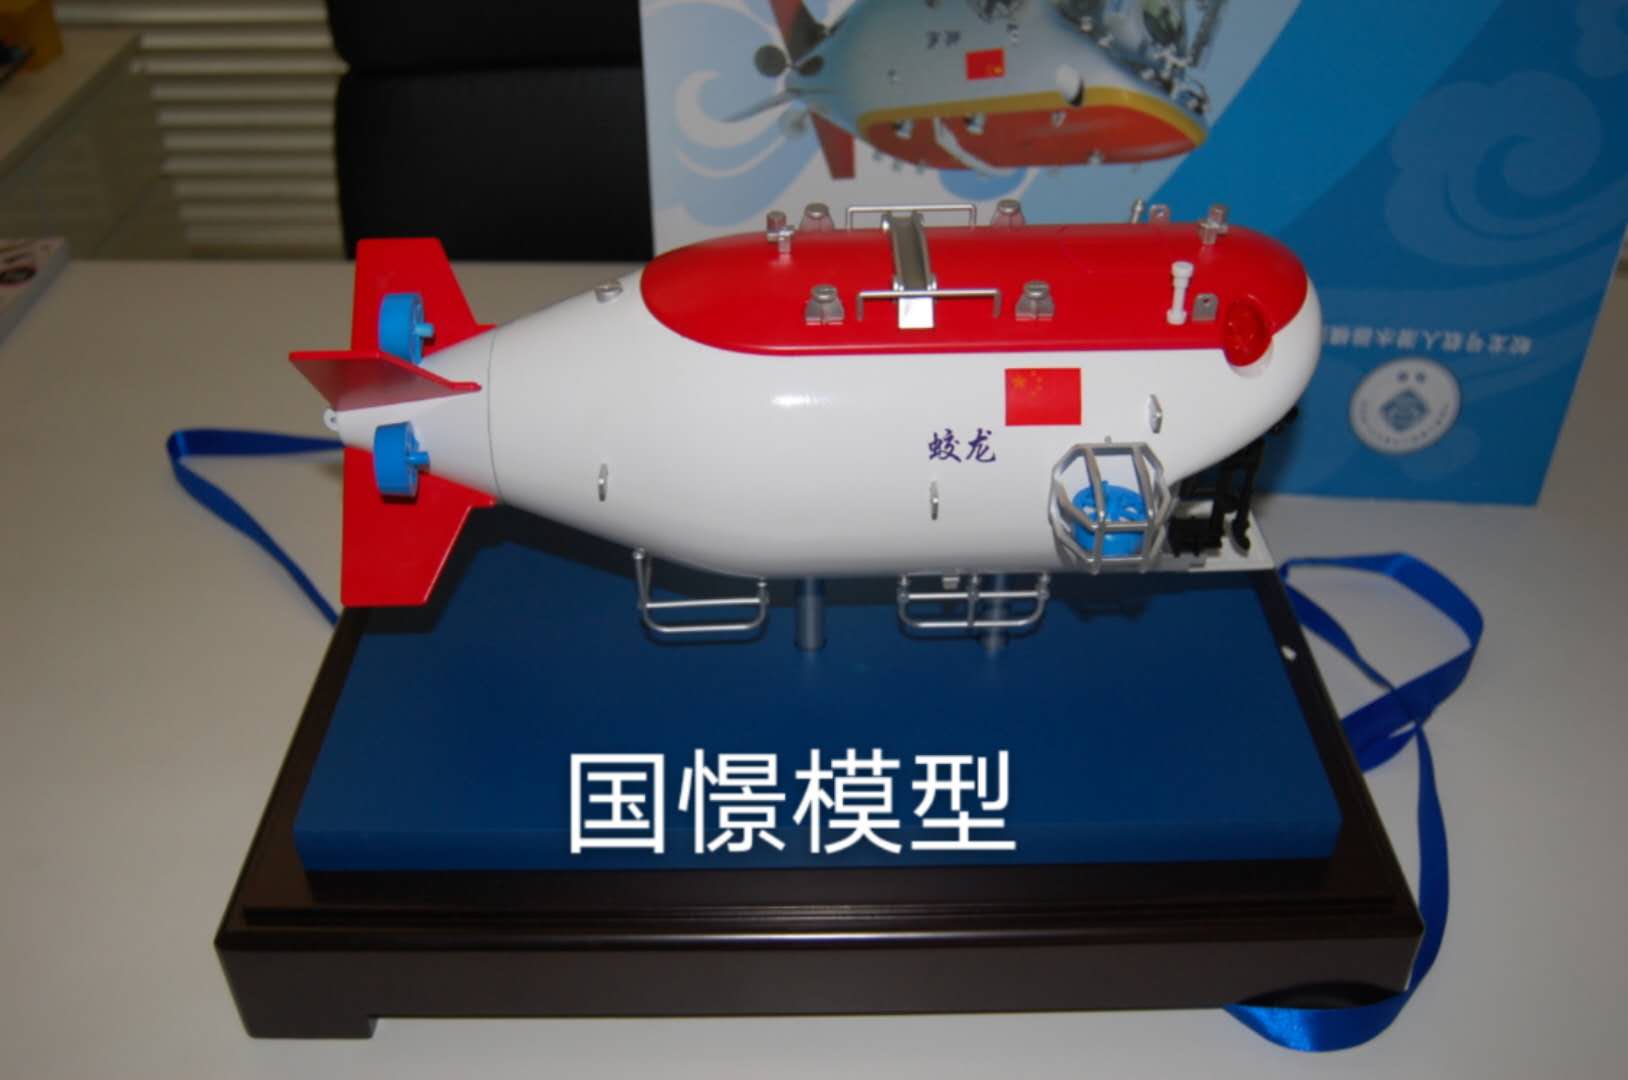 新昌县船舶模型